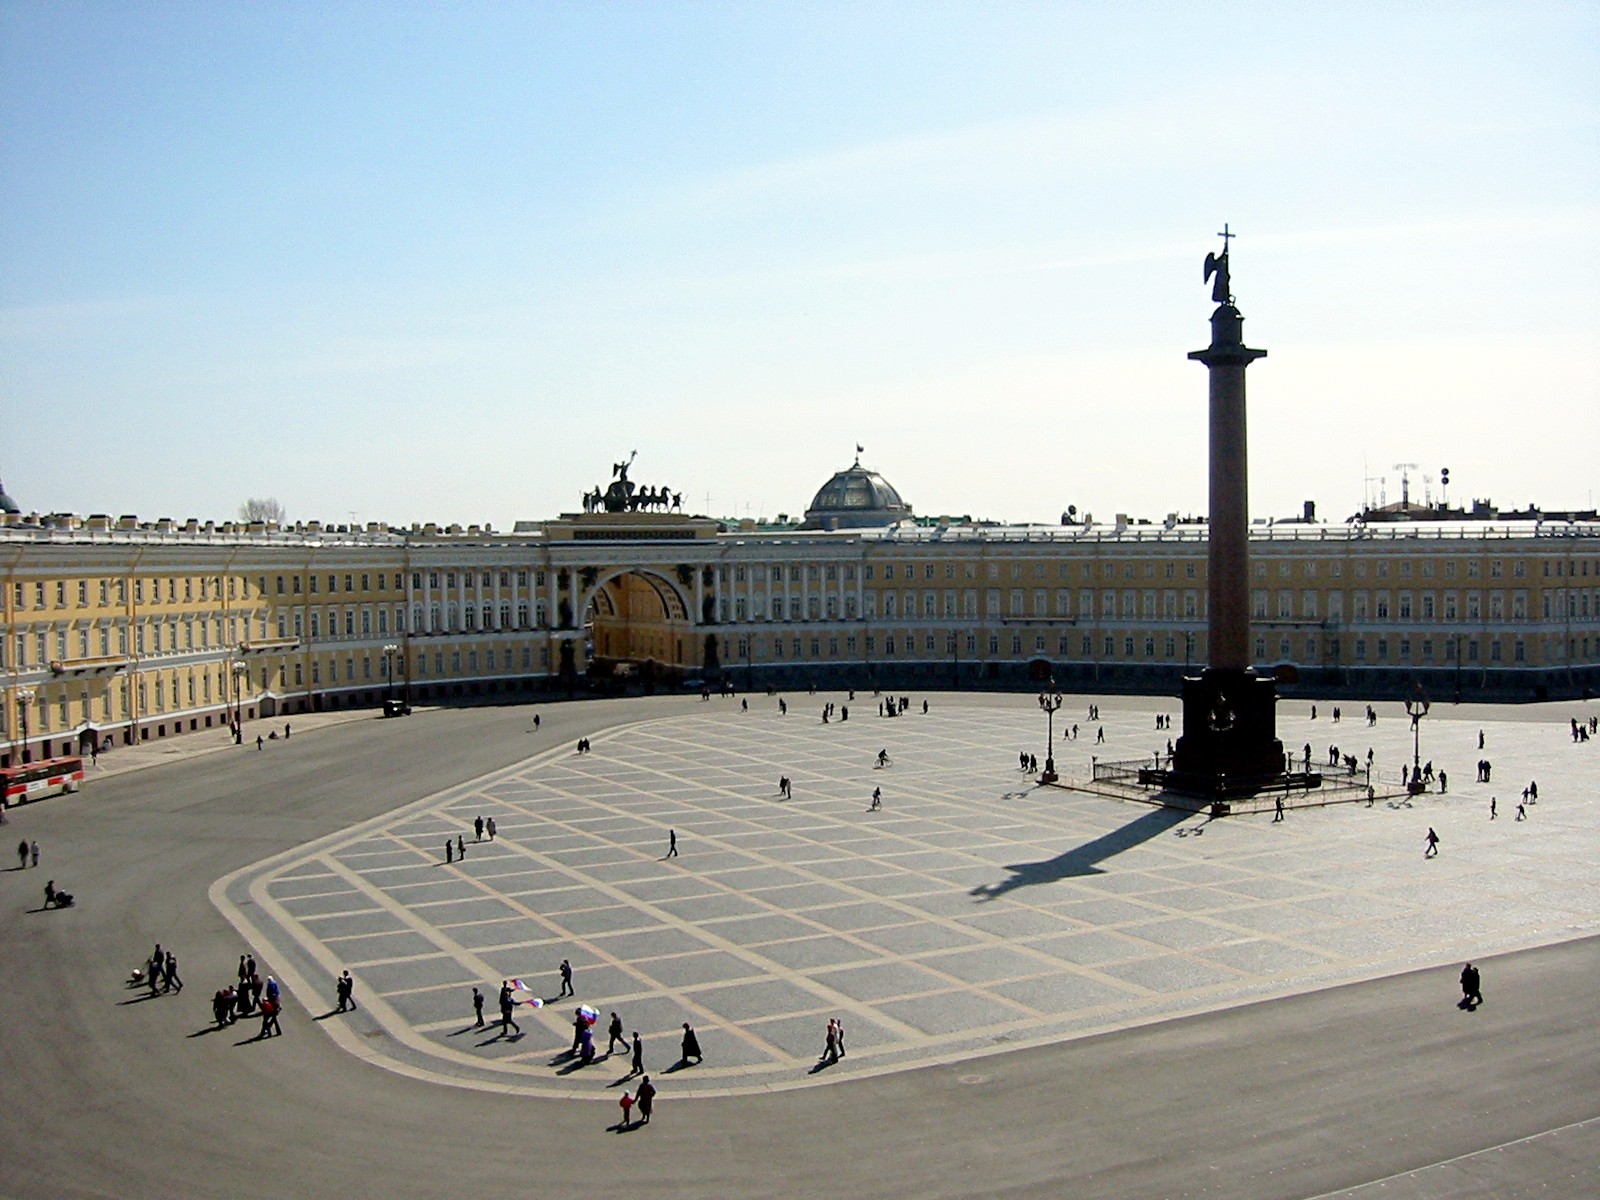 Palace Square, St. Petersburg, Russia | Places | Pinterest | Saint ...